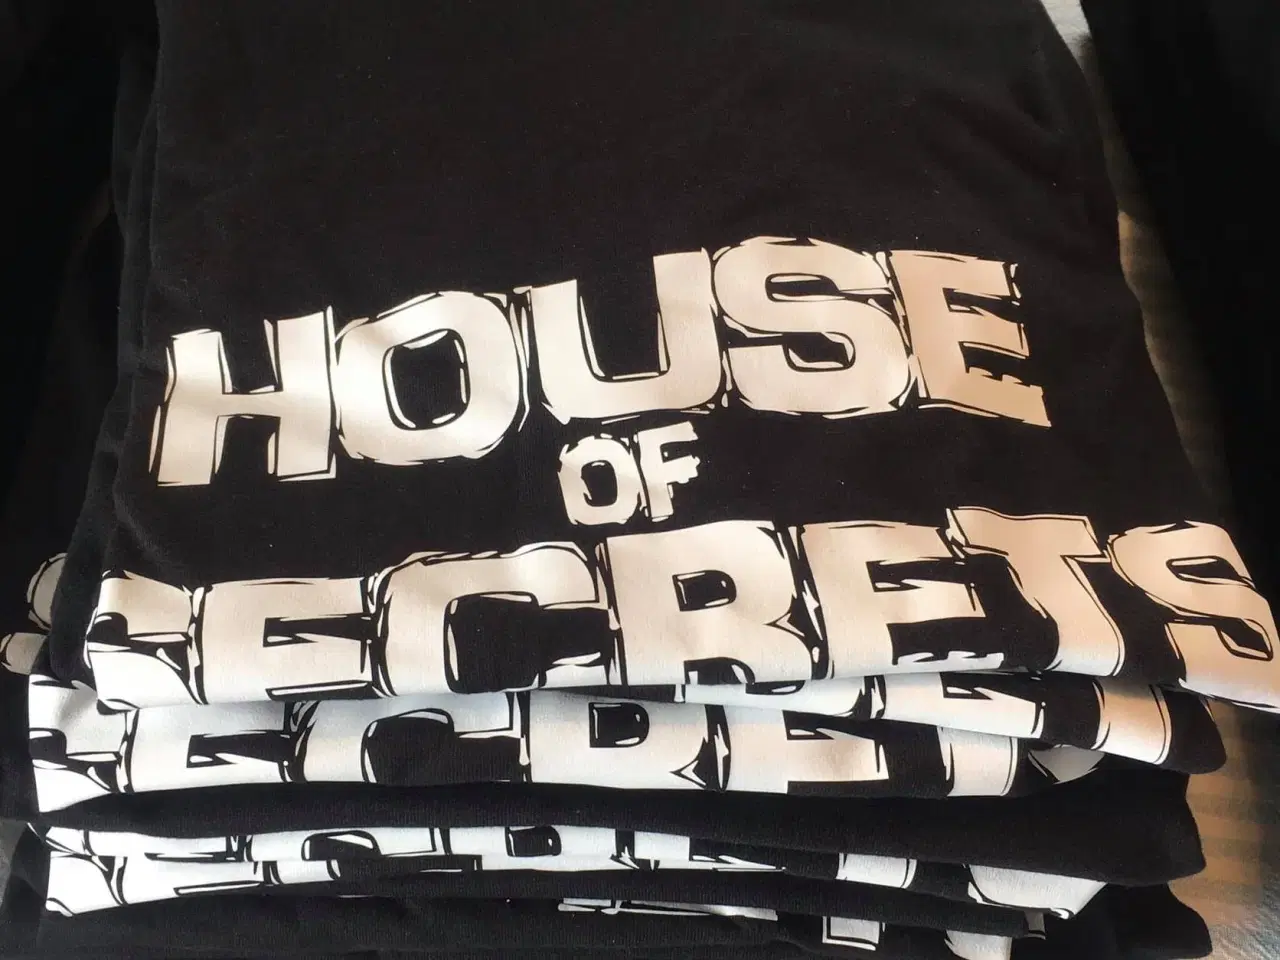 Billede 7 - T-shirts fra det danske rockband House of Secrets